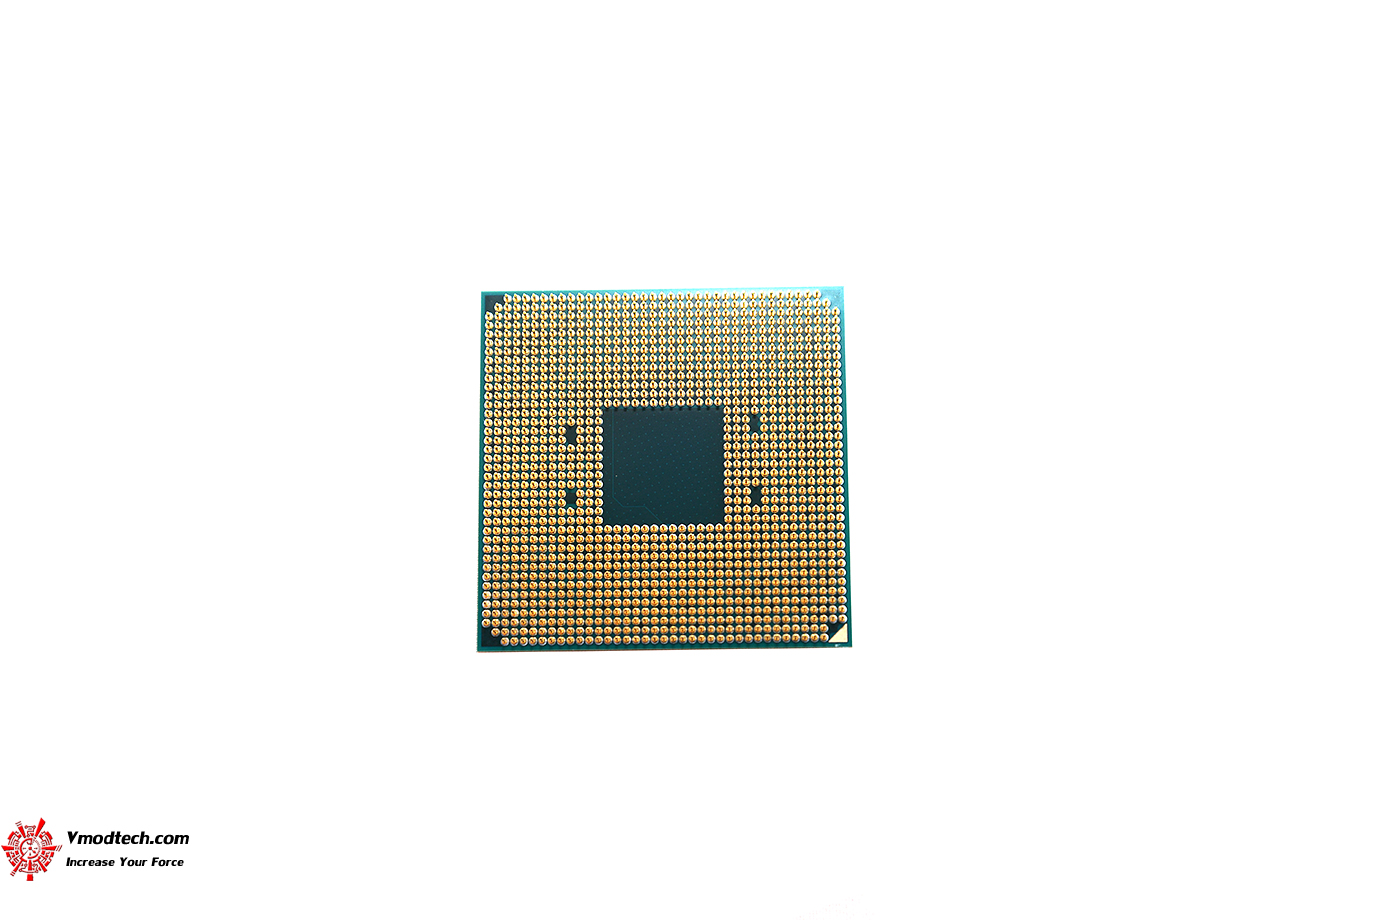 dsc 6665 AMD RYZEN 5 1500X Review